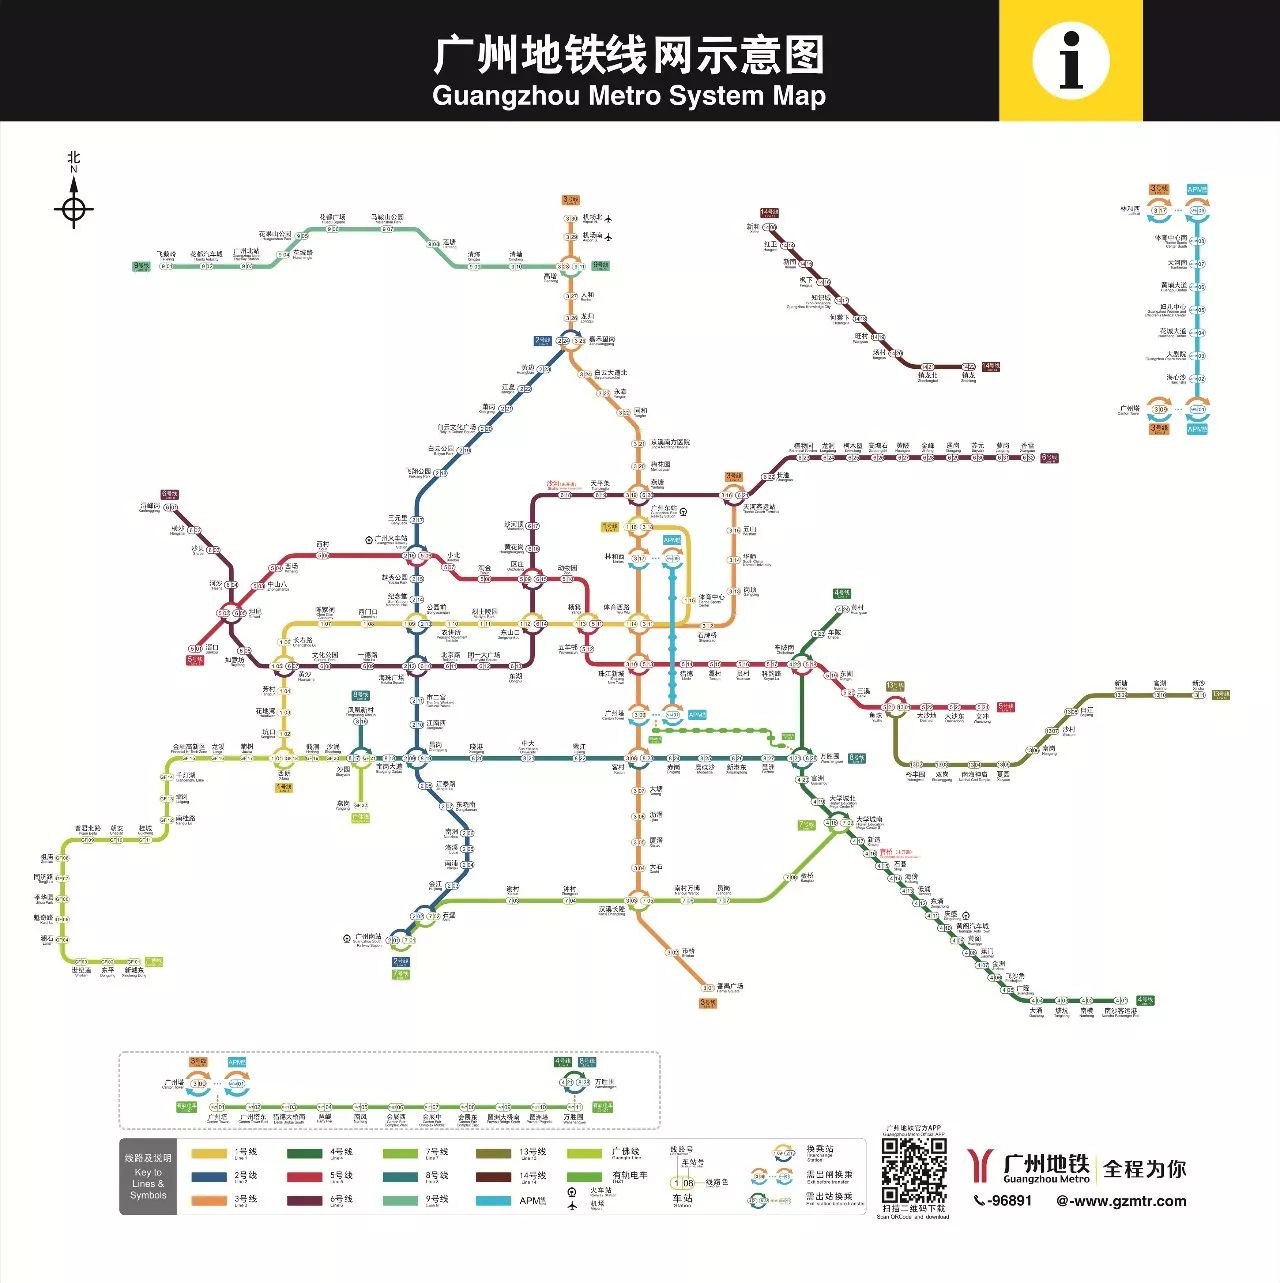 全新广州地铁线路图来了!4条新线月底通车,去